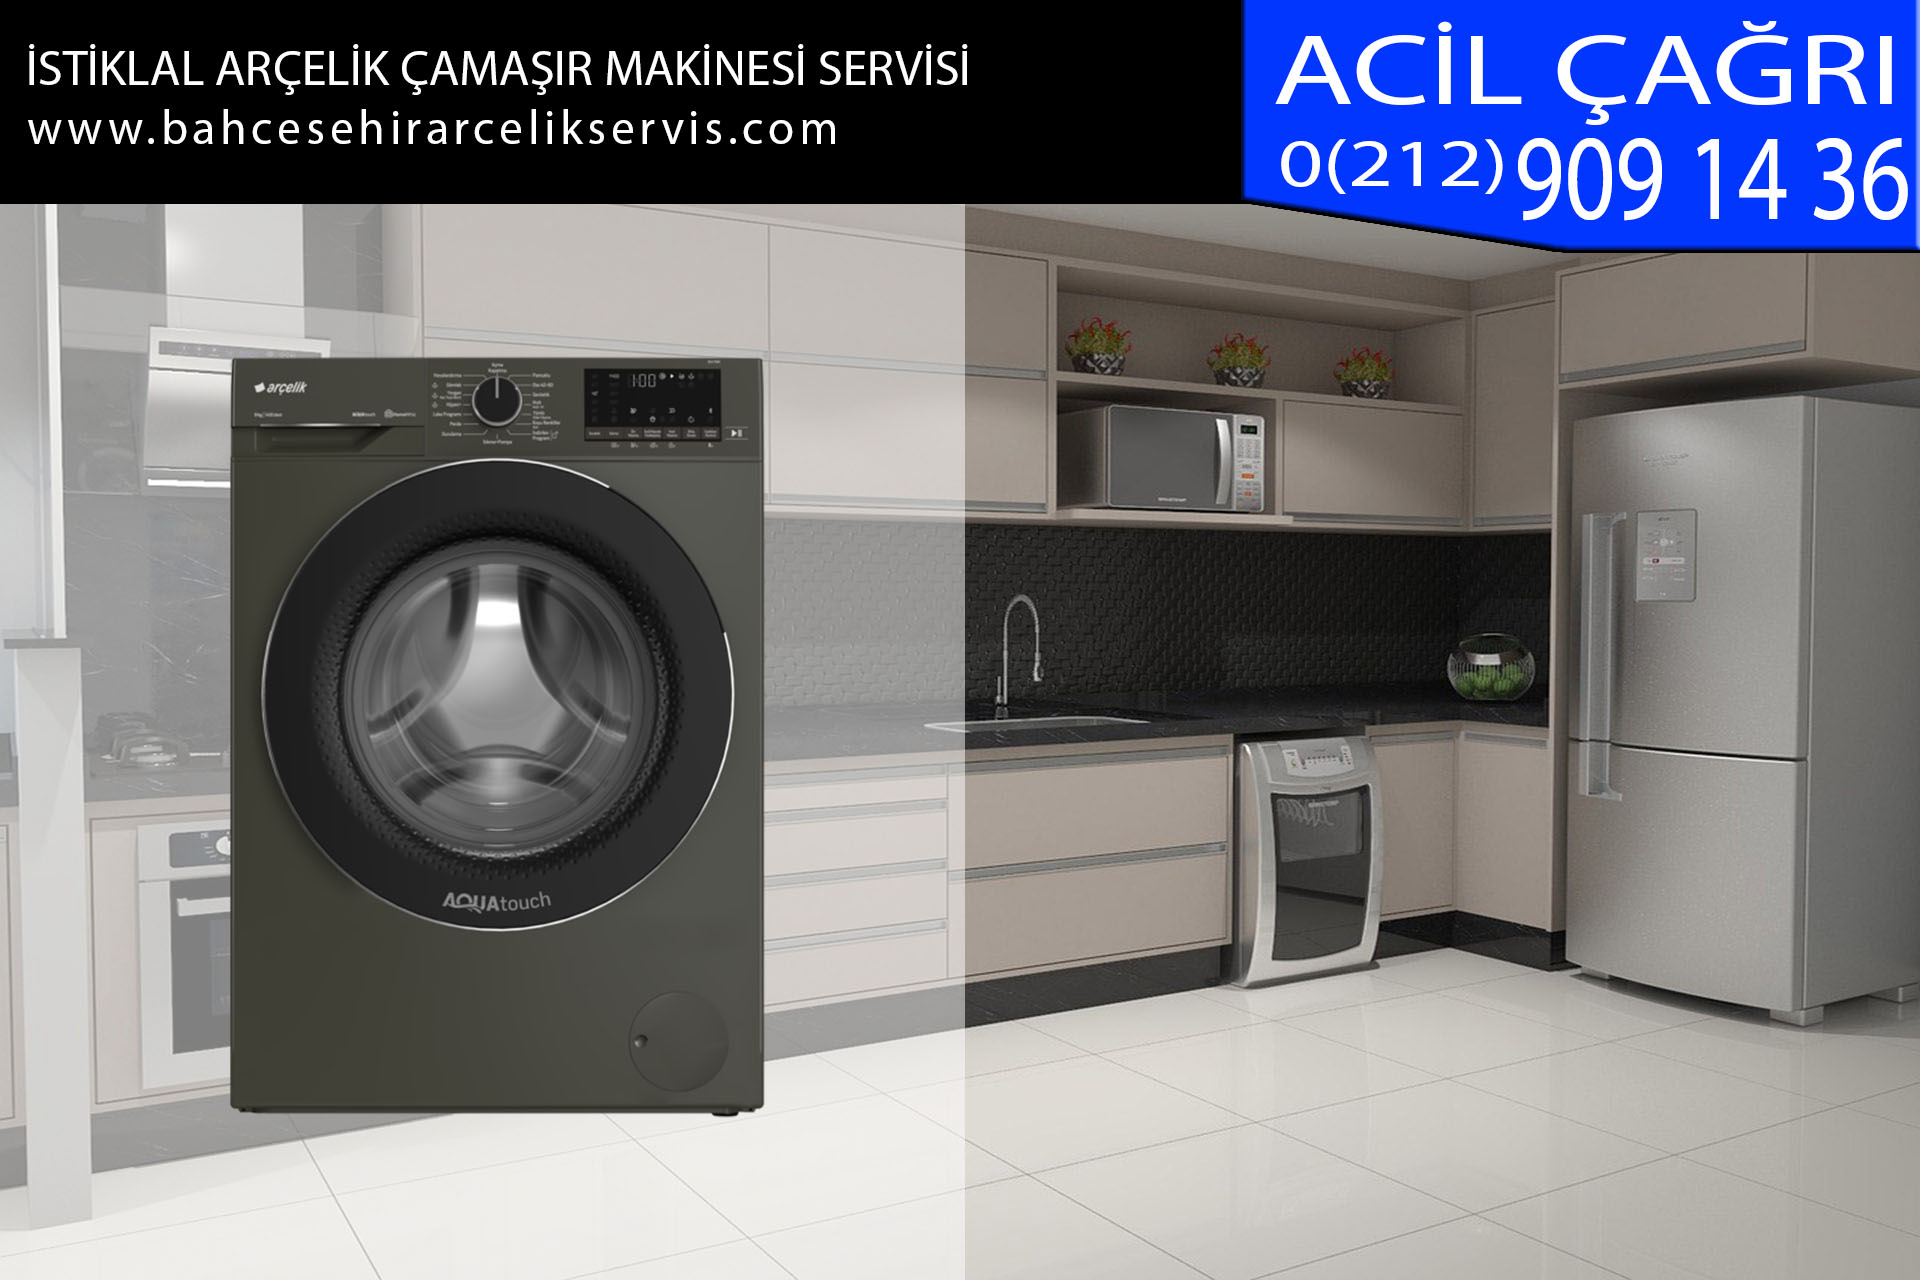 istiklal arçelik çamaşır makinesi servisi